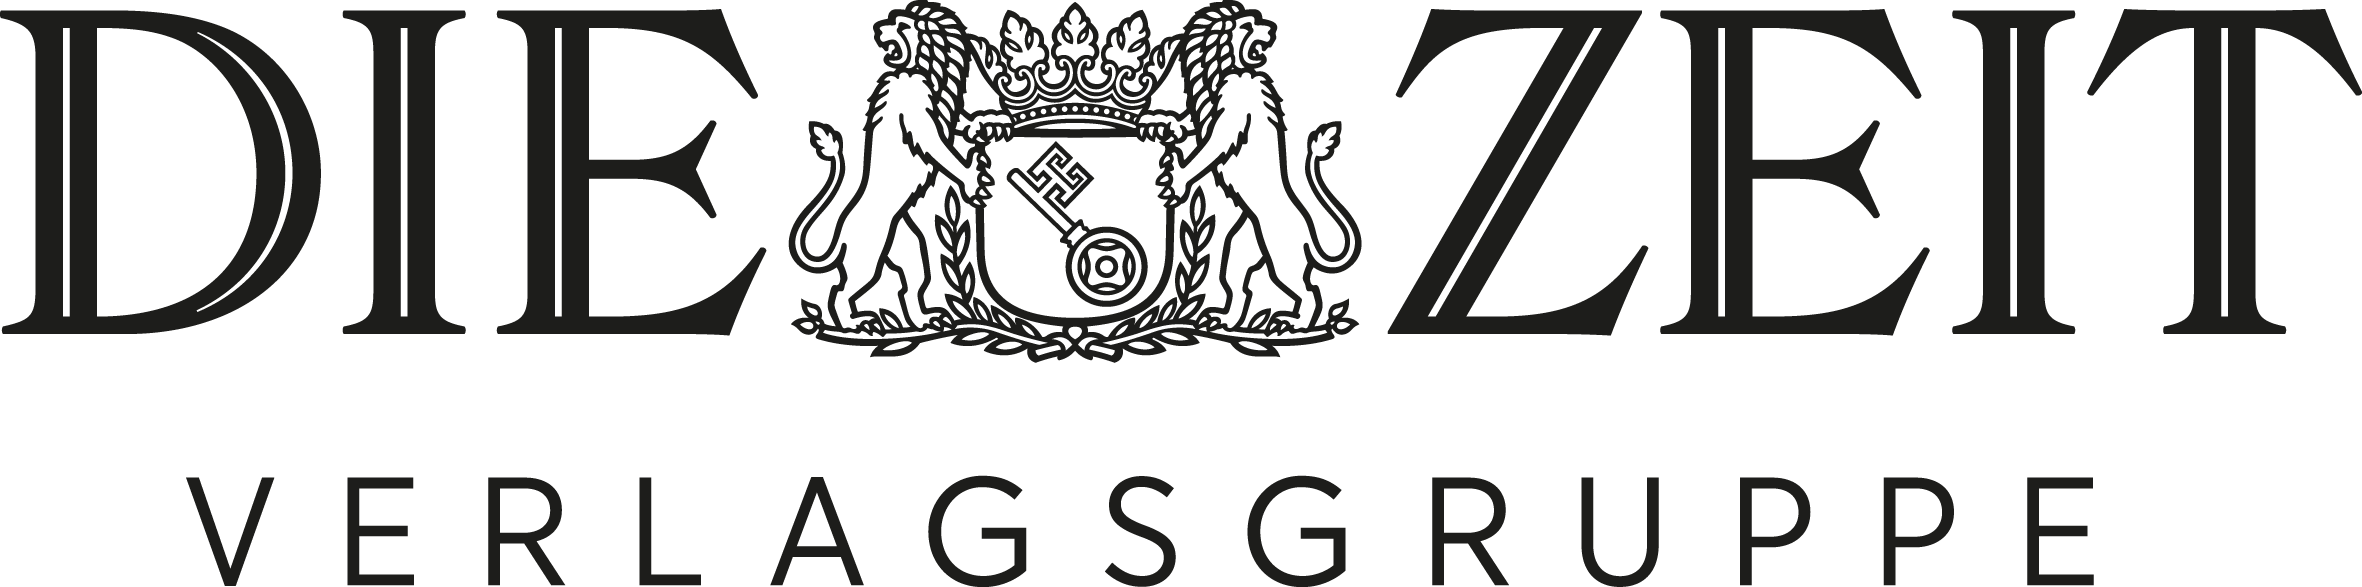 Zeit-verlagsgruppe_logo